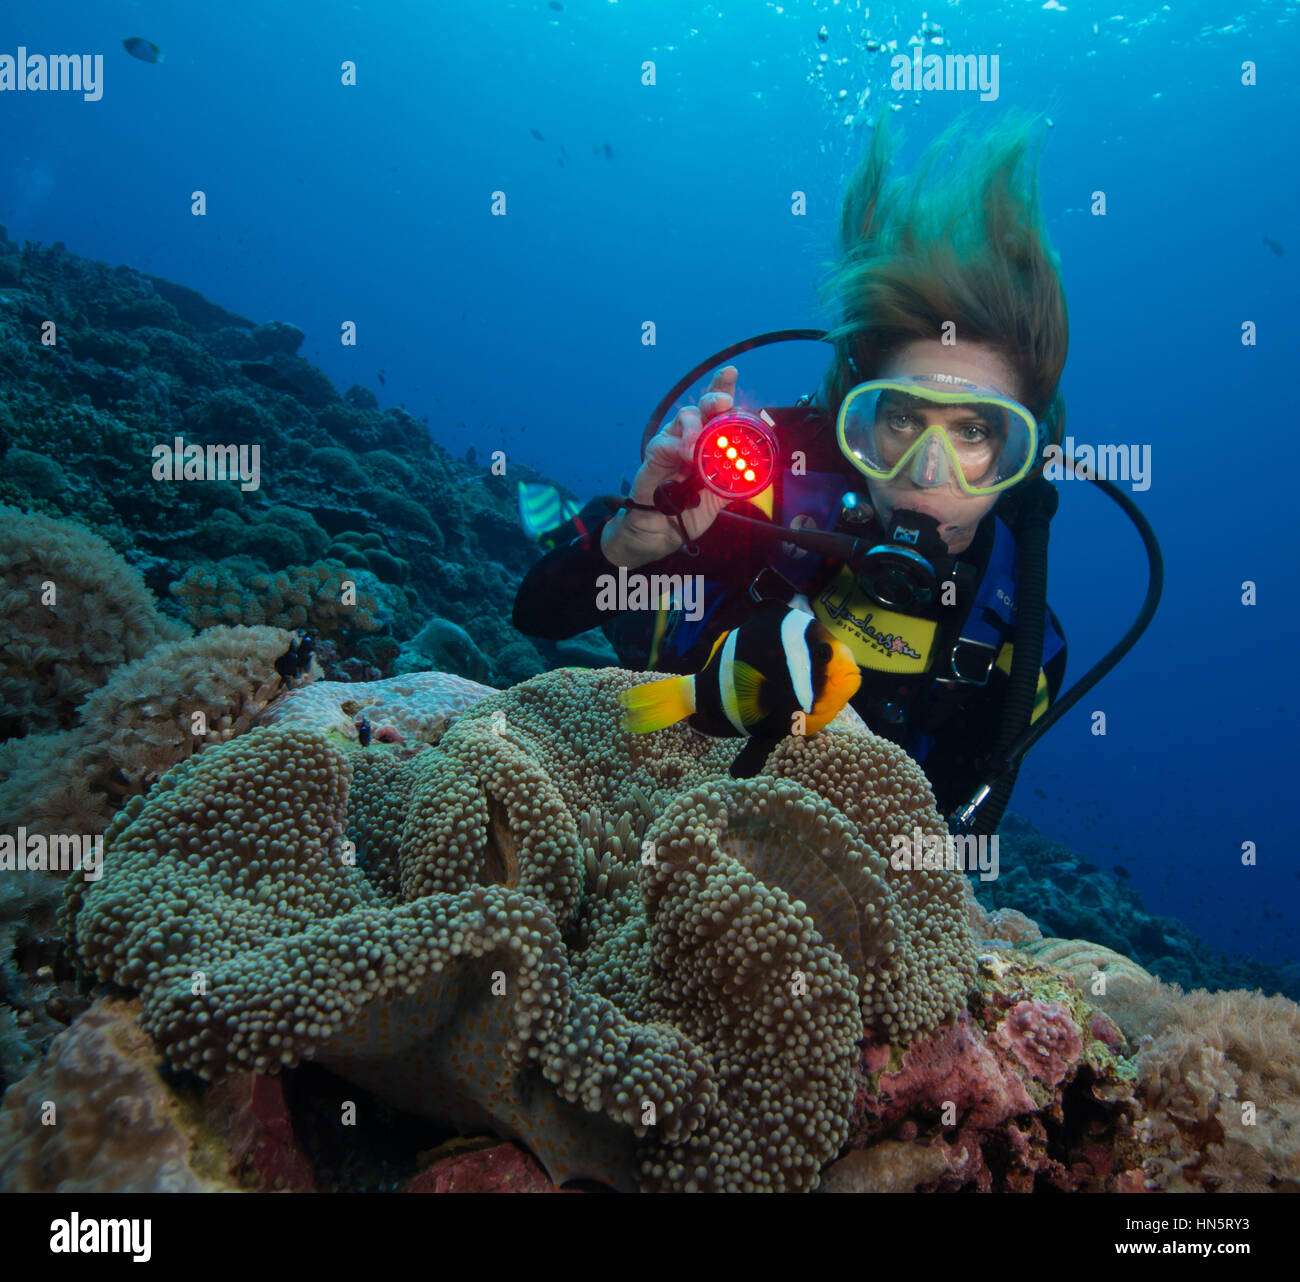 Taucher bescheint Unterwasser Licht eine Clarks Anemonenfische. Stockfoto